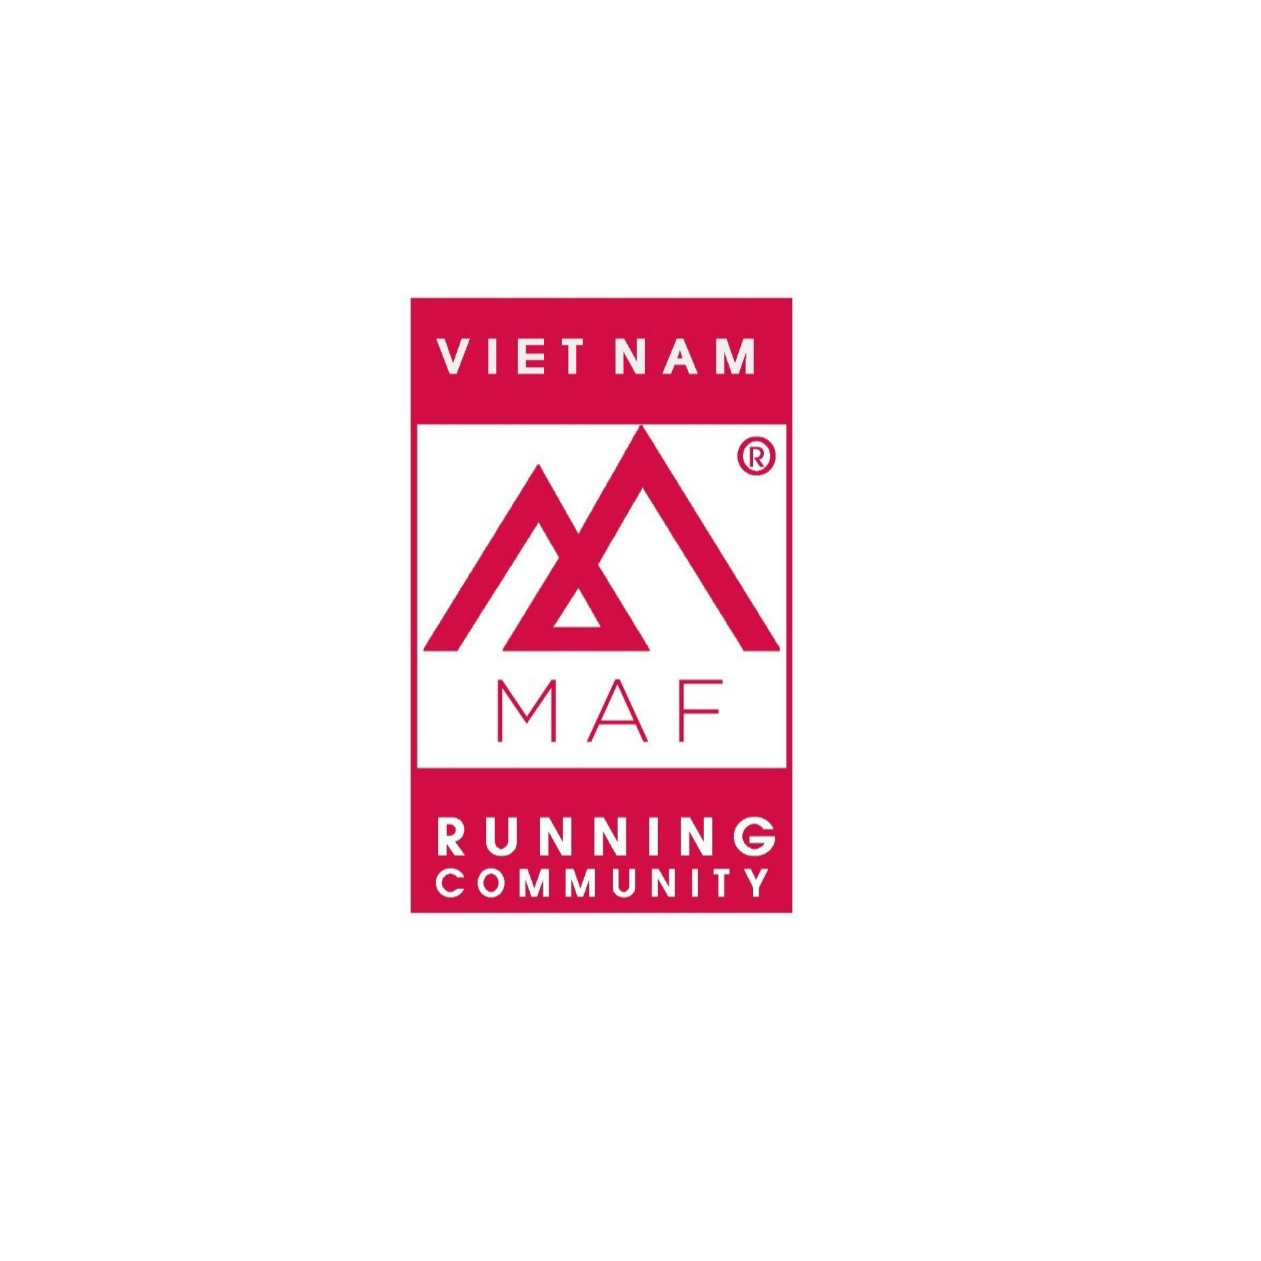 Viet Nam Maf Running Community